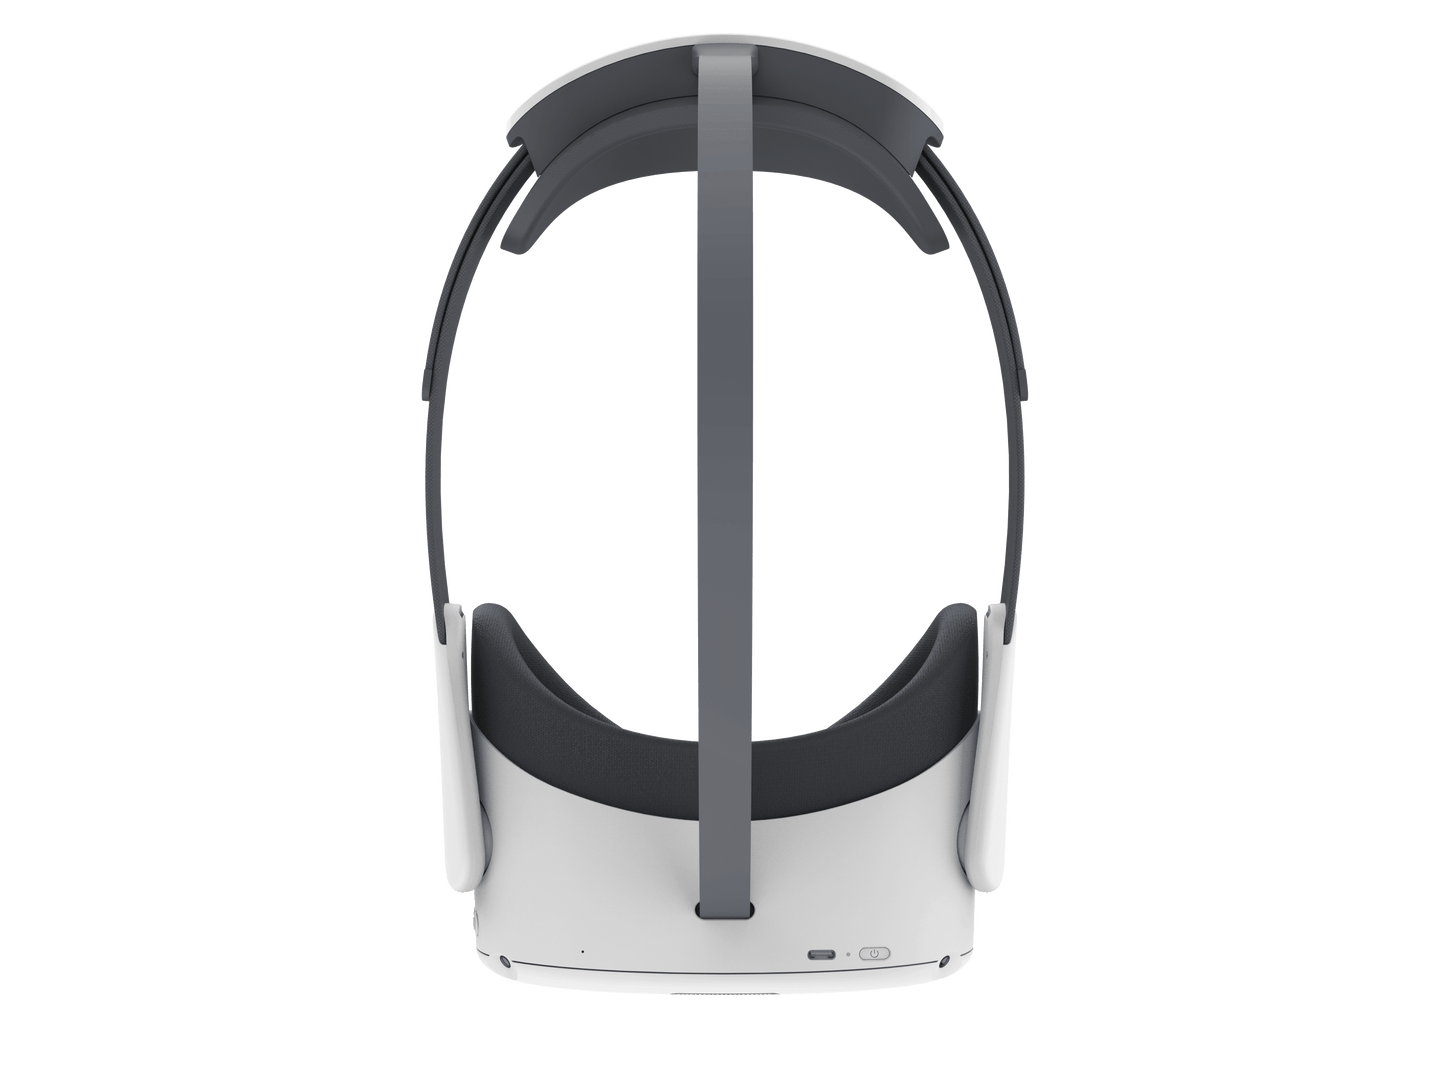 Pico Neo 3 (Occhiali per la Realtà Virtuale)